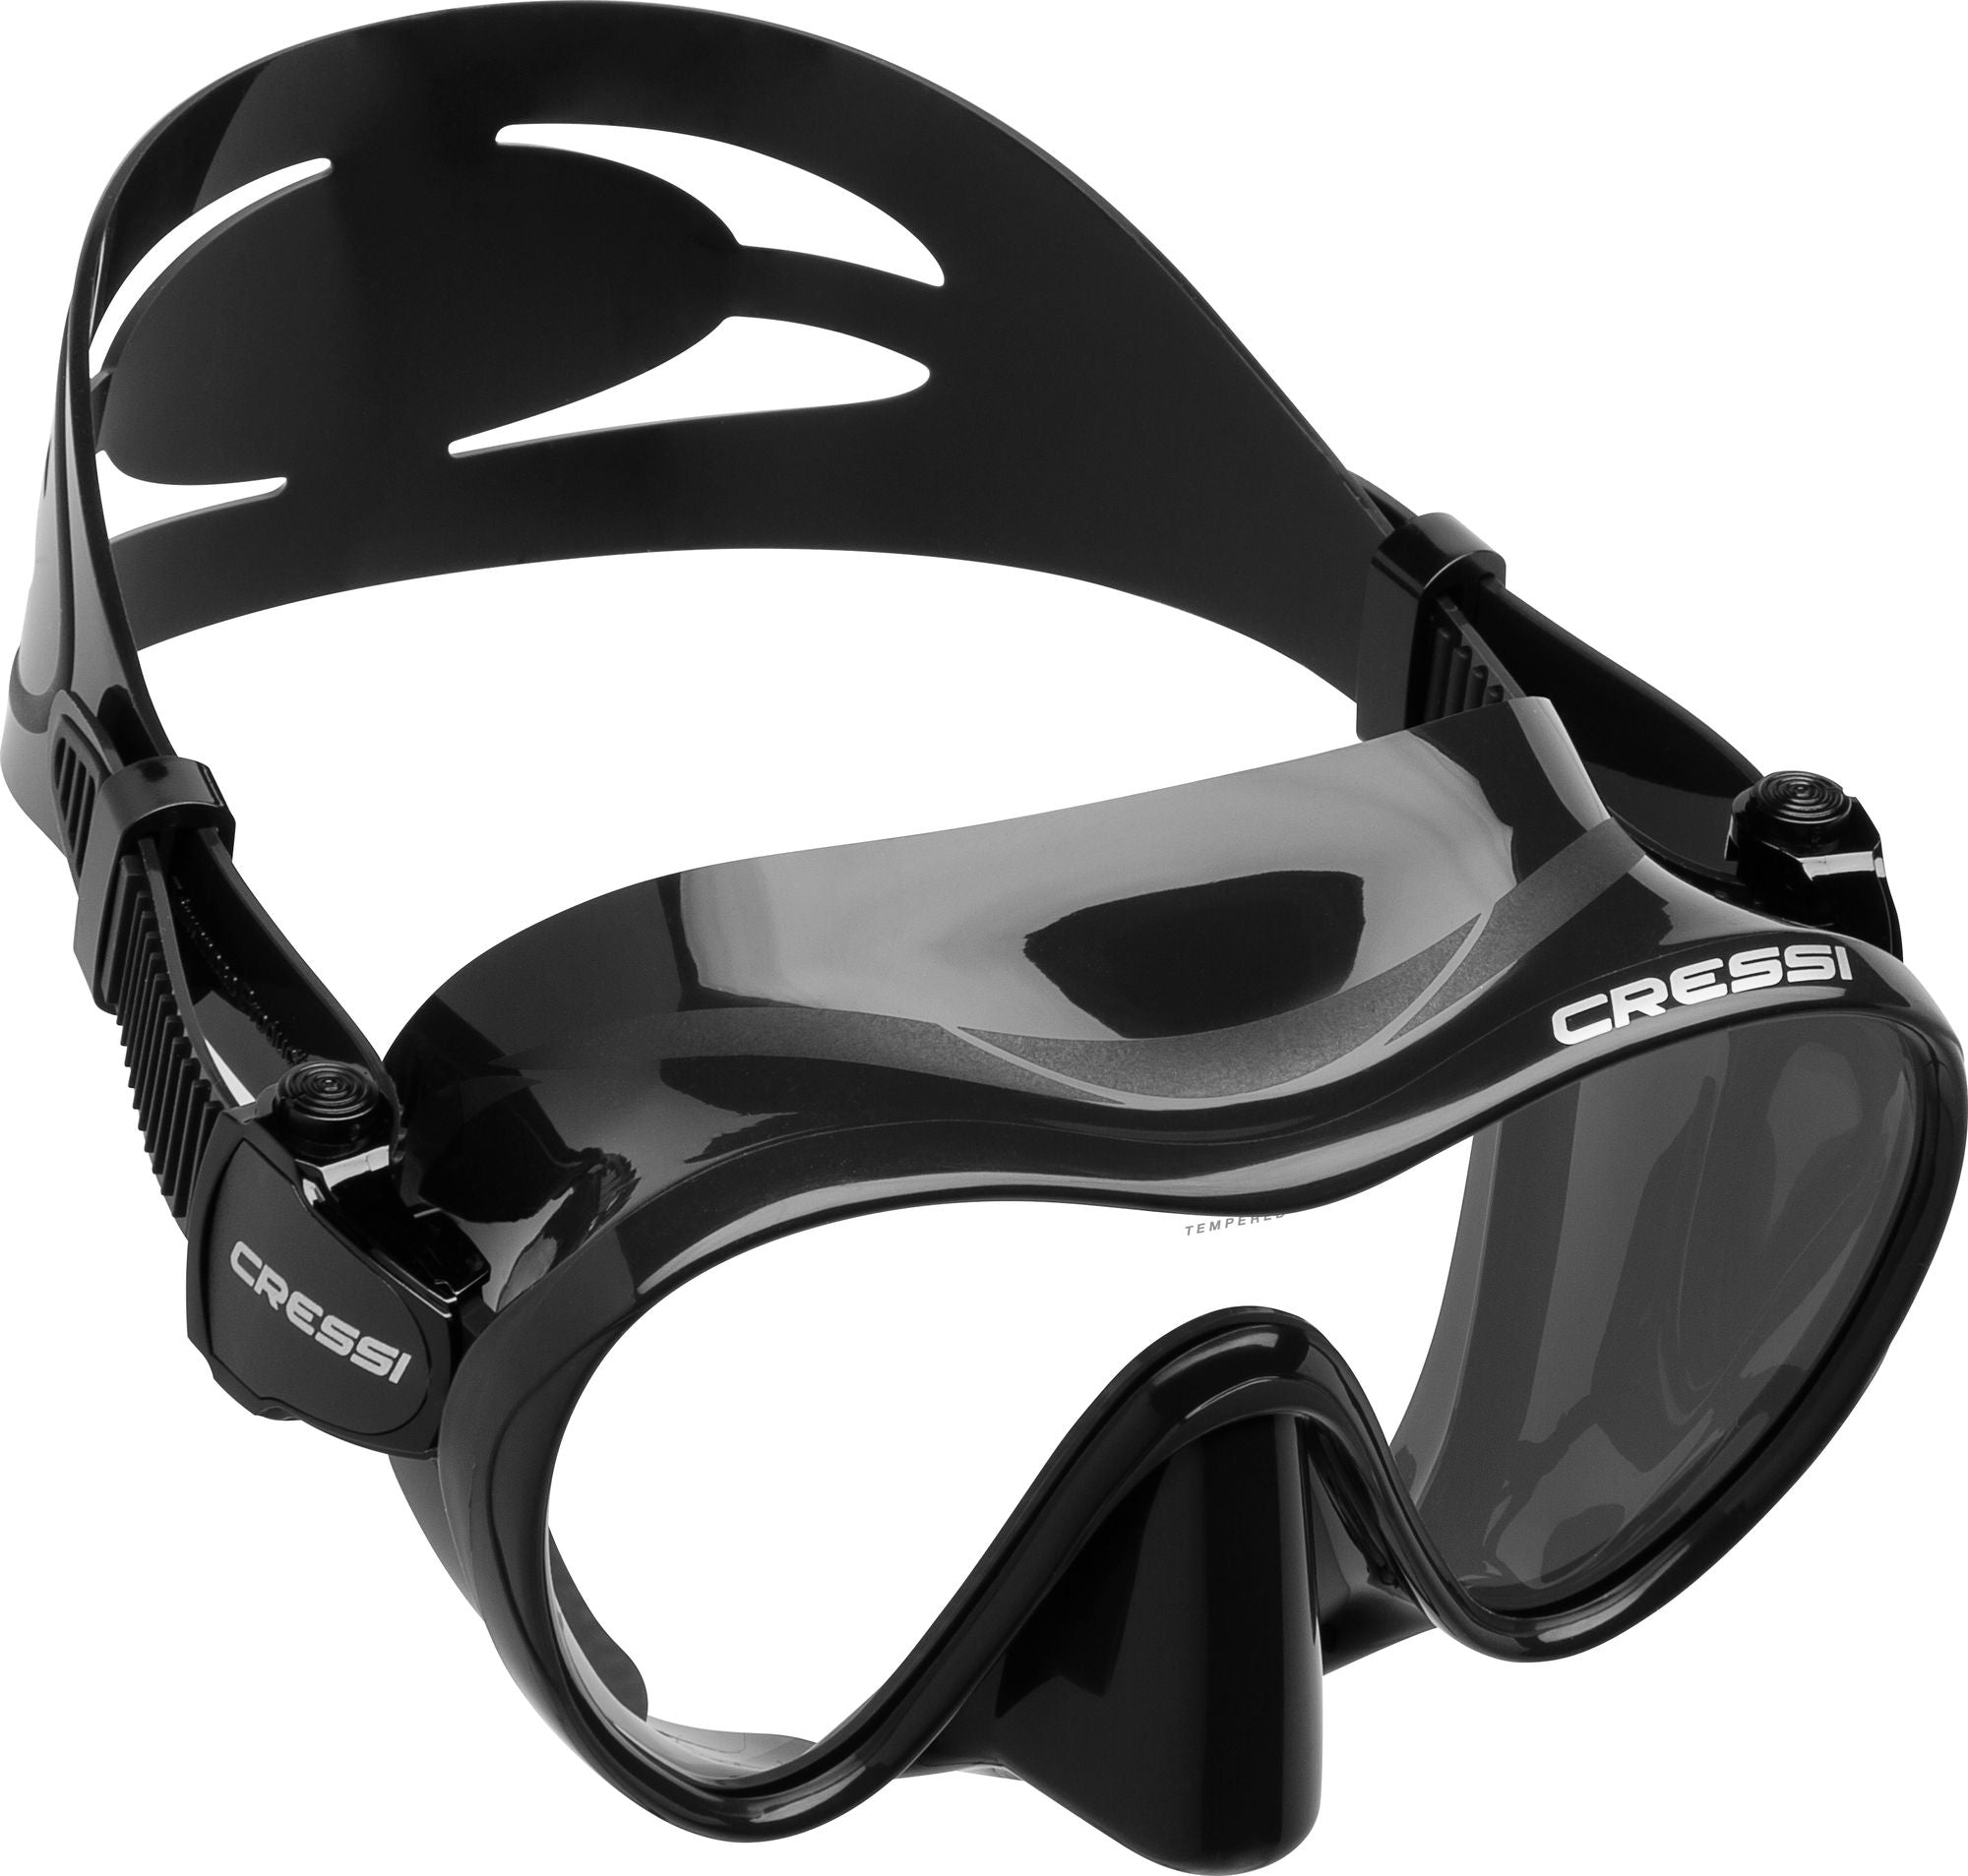 F1 Small Mask - Scuba mask, Snorkelling mask